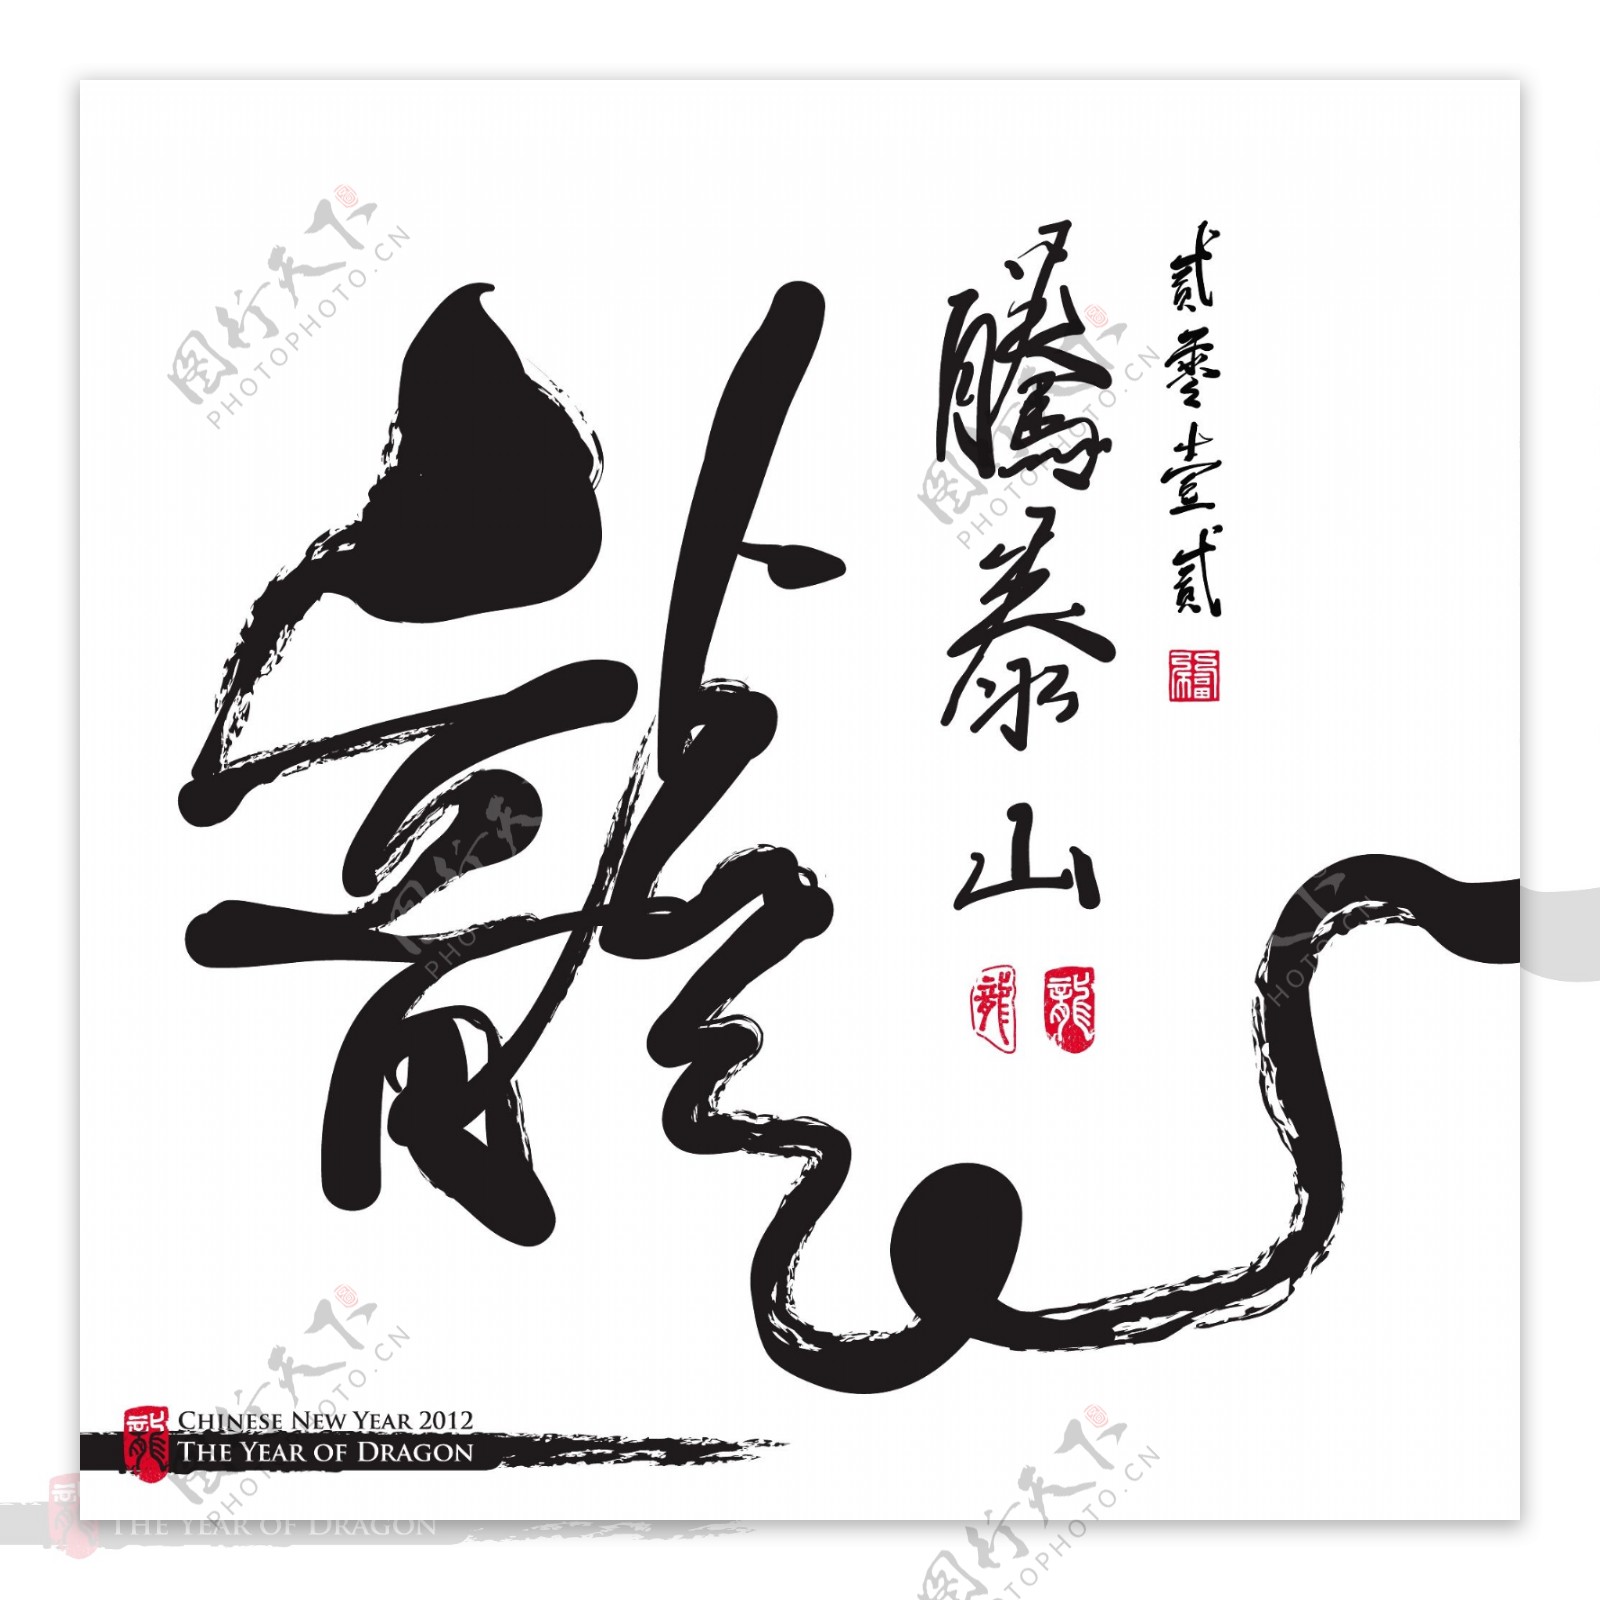 向量的中国新年书法龙翻译的一年祥瑞的龙